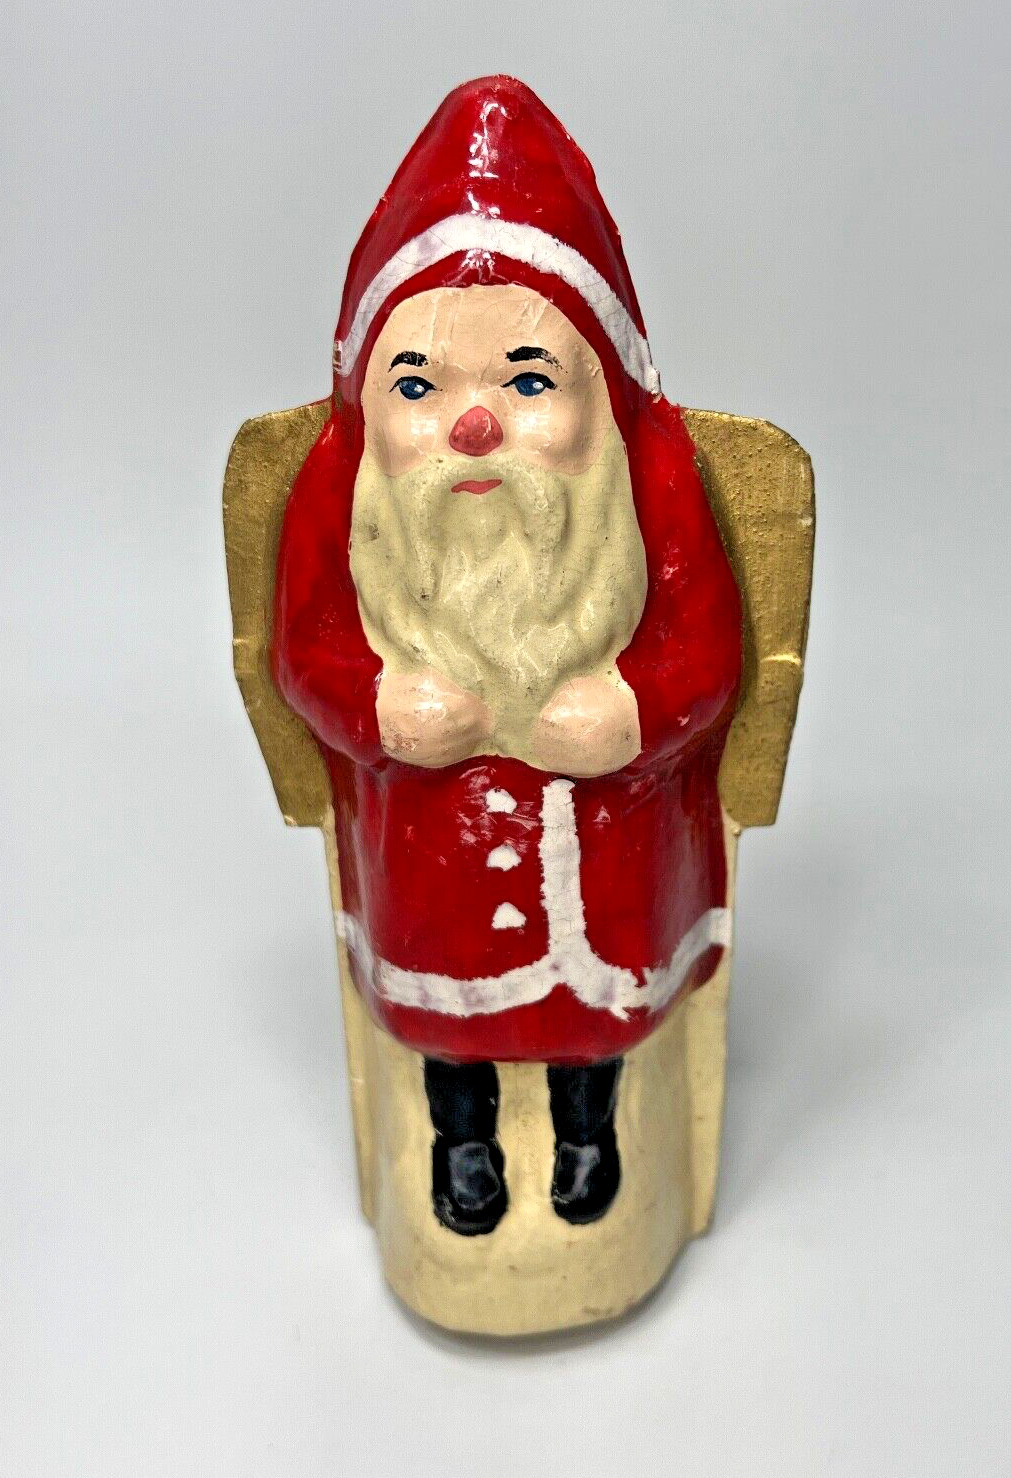 Antique German Paper Mache Santa Claus Ornament Figurine Hand-painted